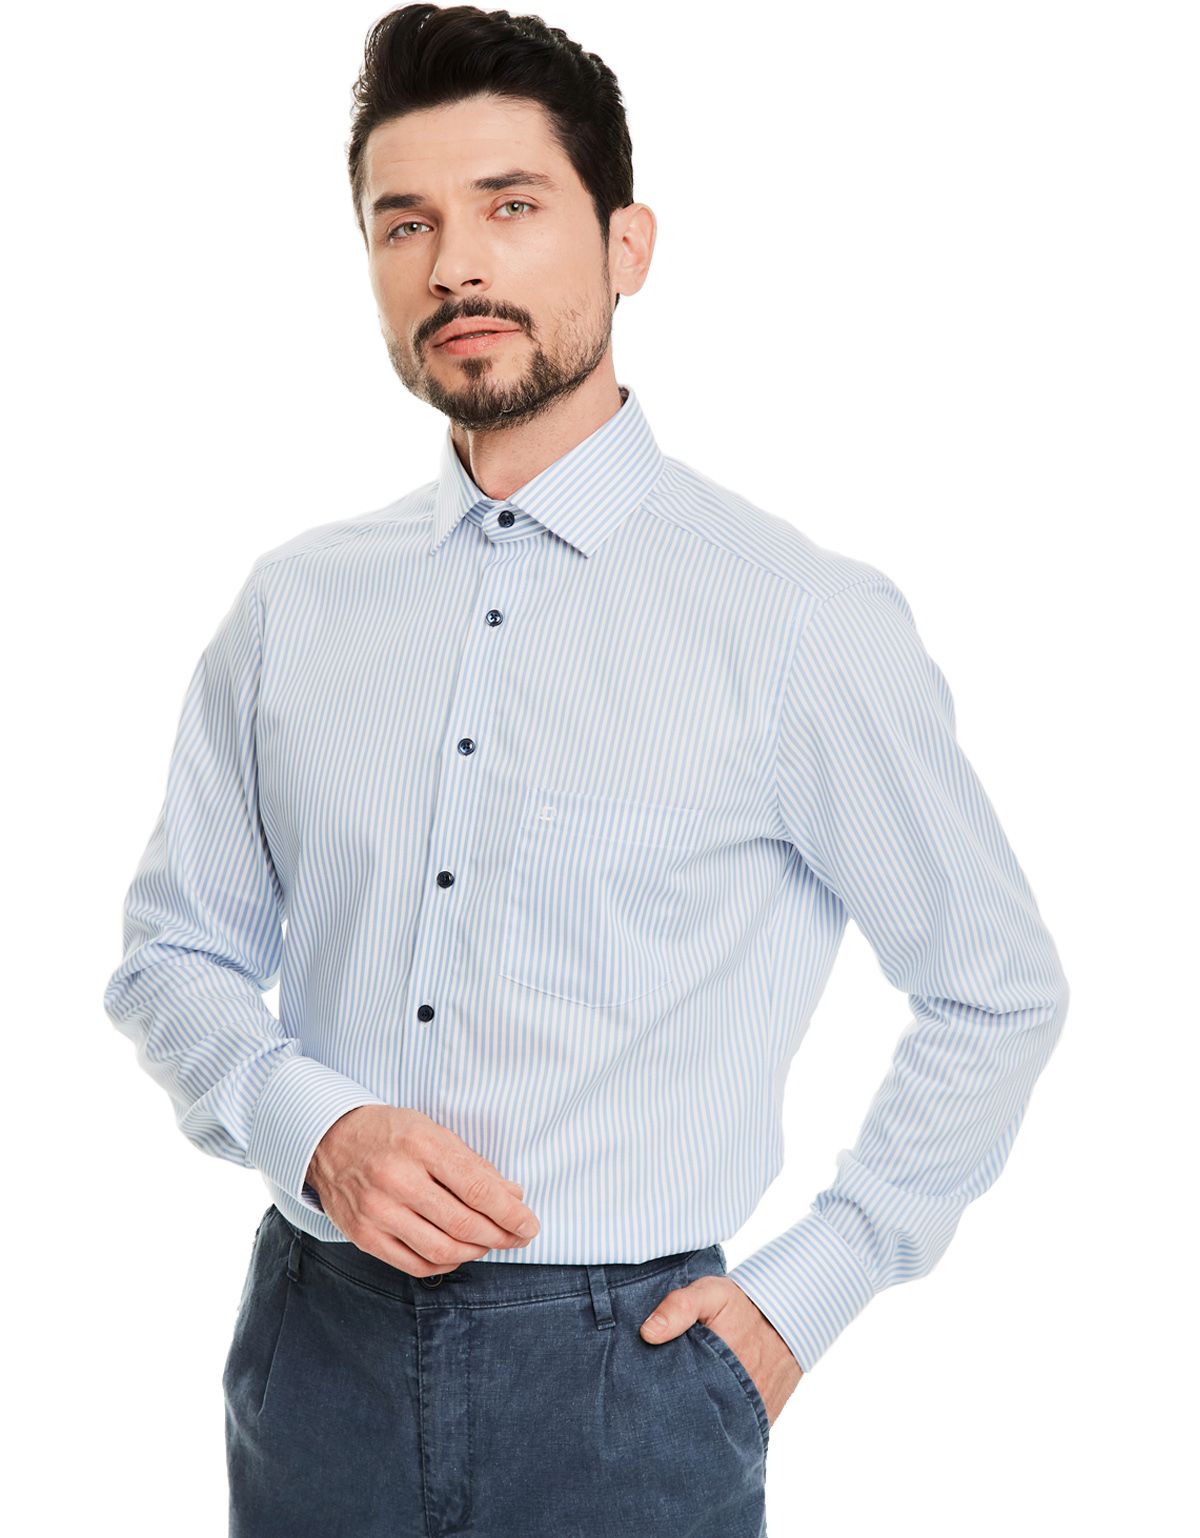 Рубашка мужская с длинным рукавом классическая OLYMP Luxor, modern fit[ГОЛУБОЙ]